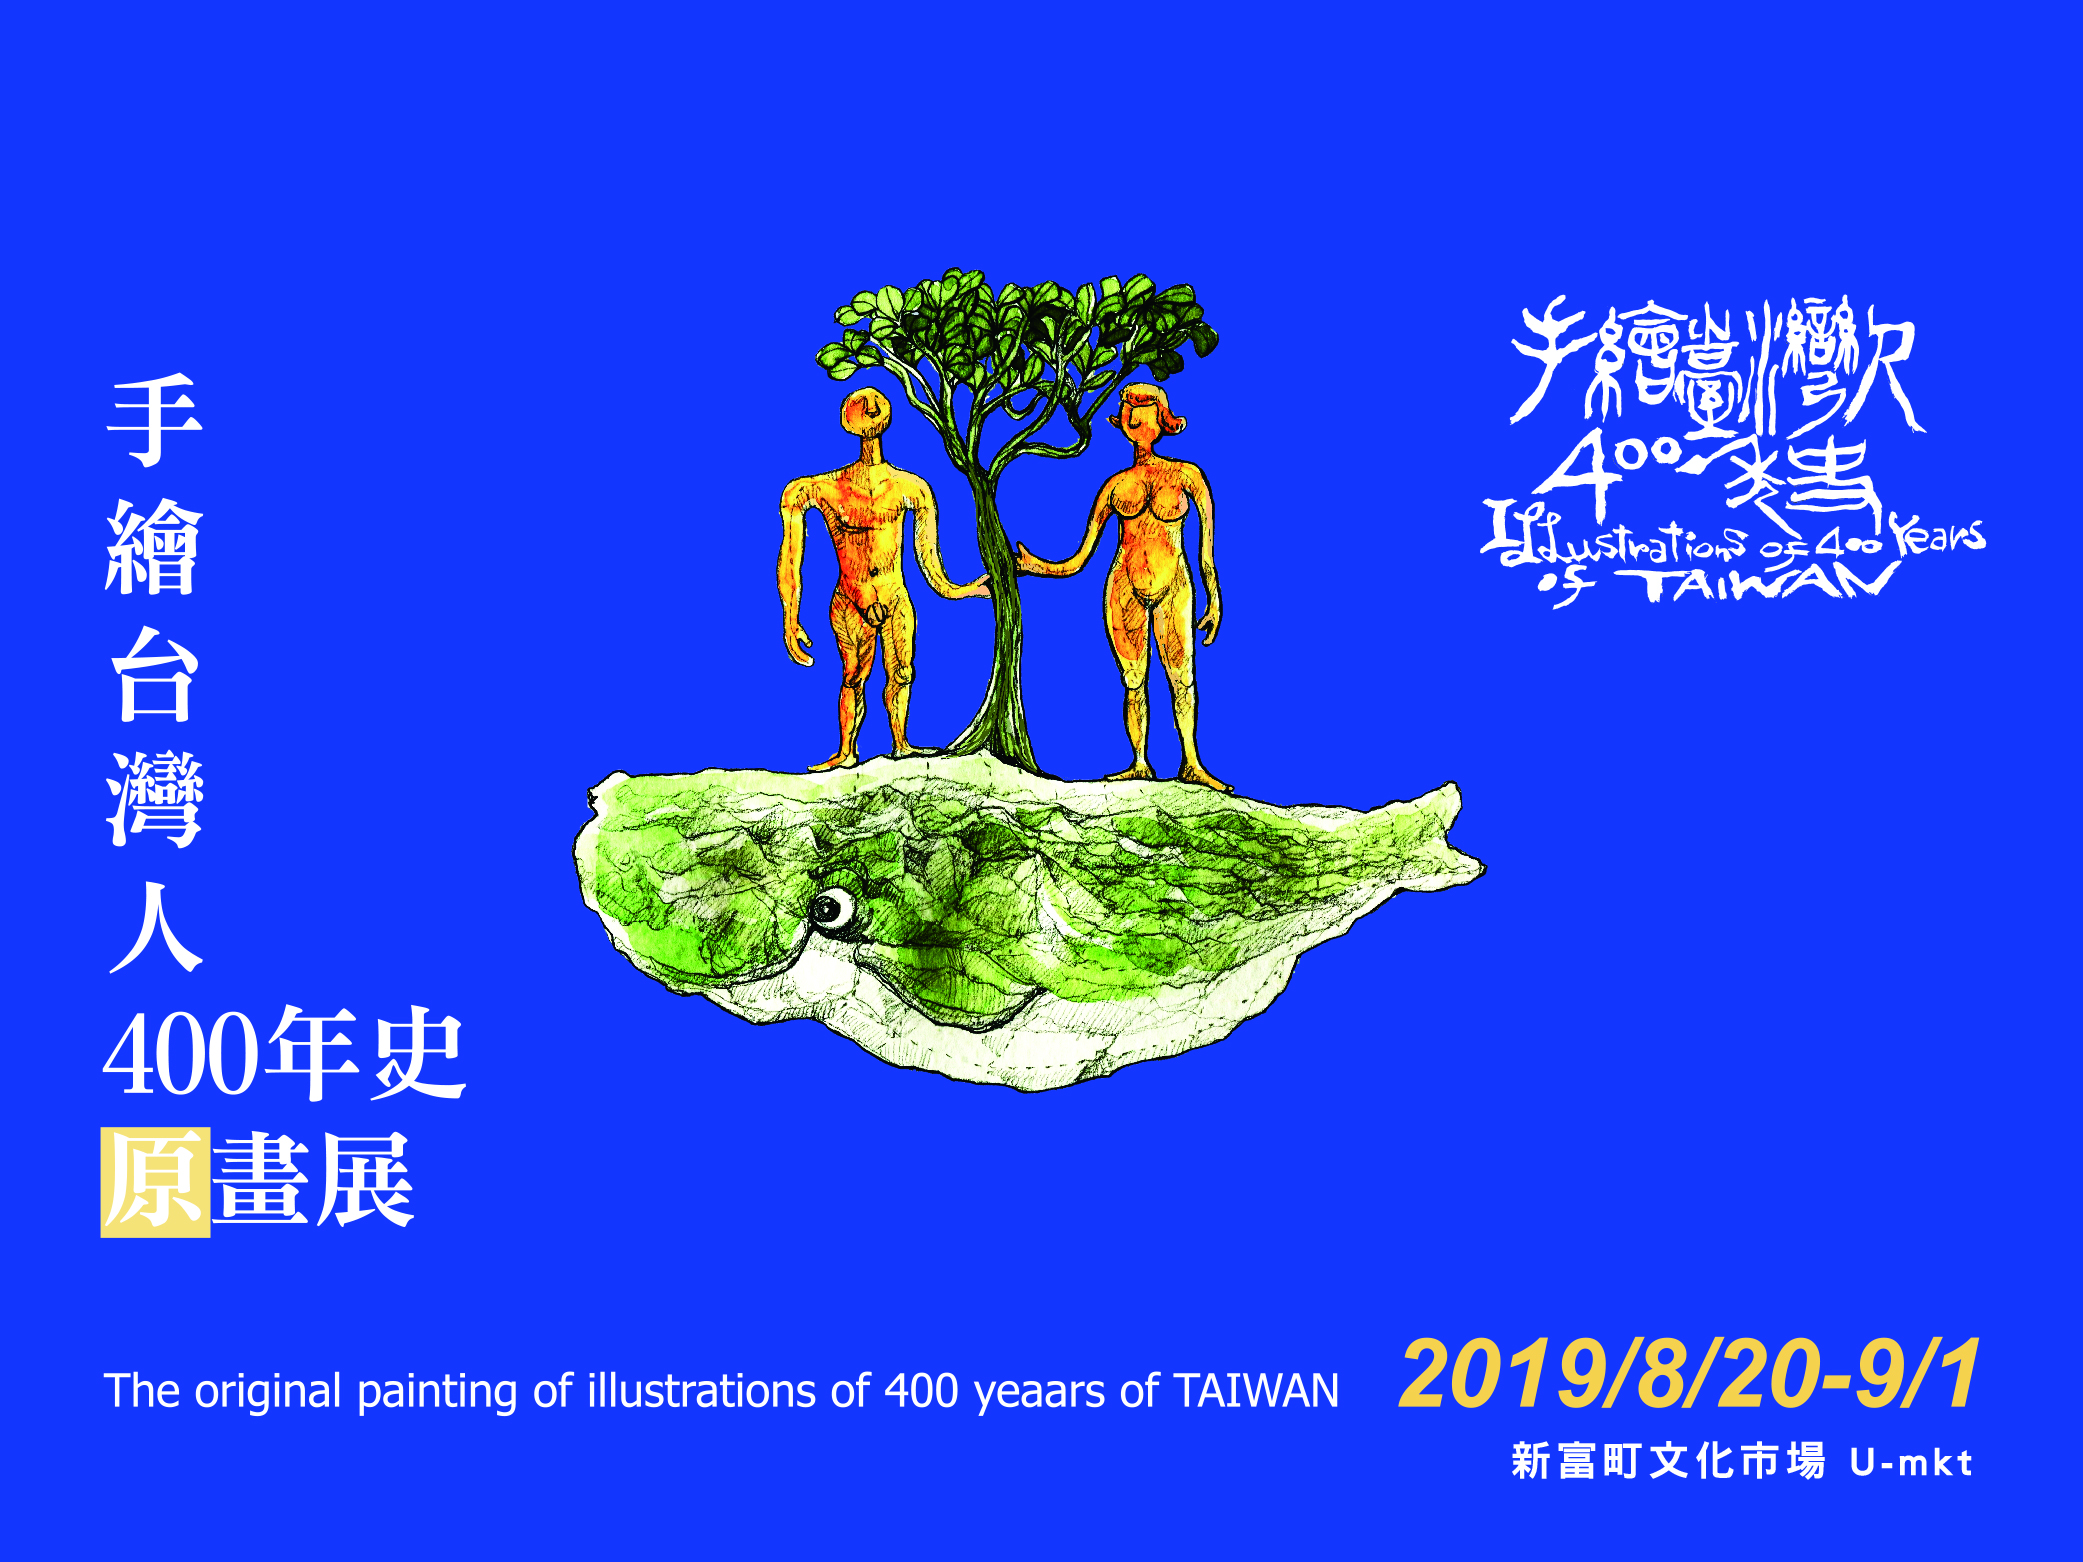 【小間工作室活動】手繪台灣人400年史原畫展